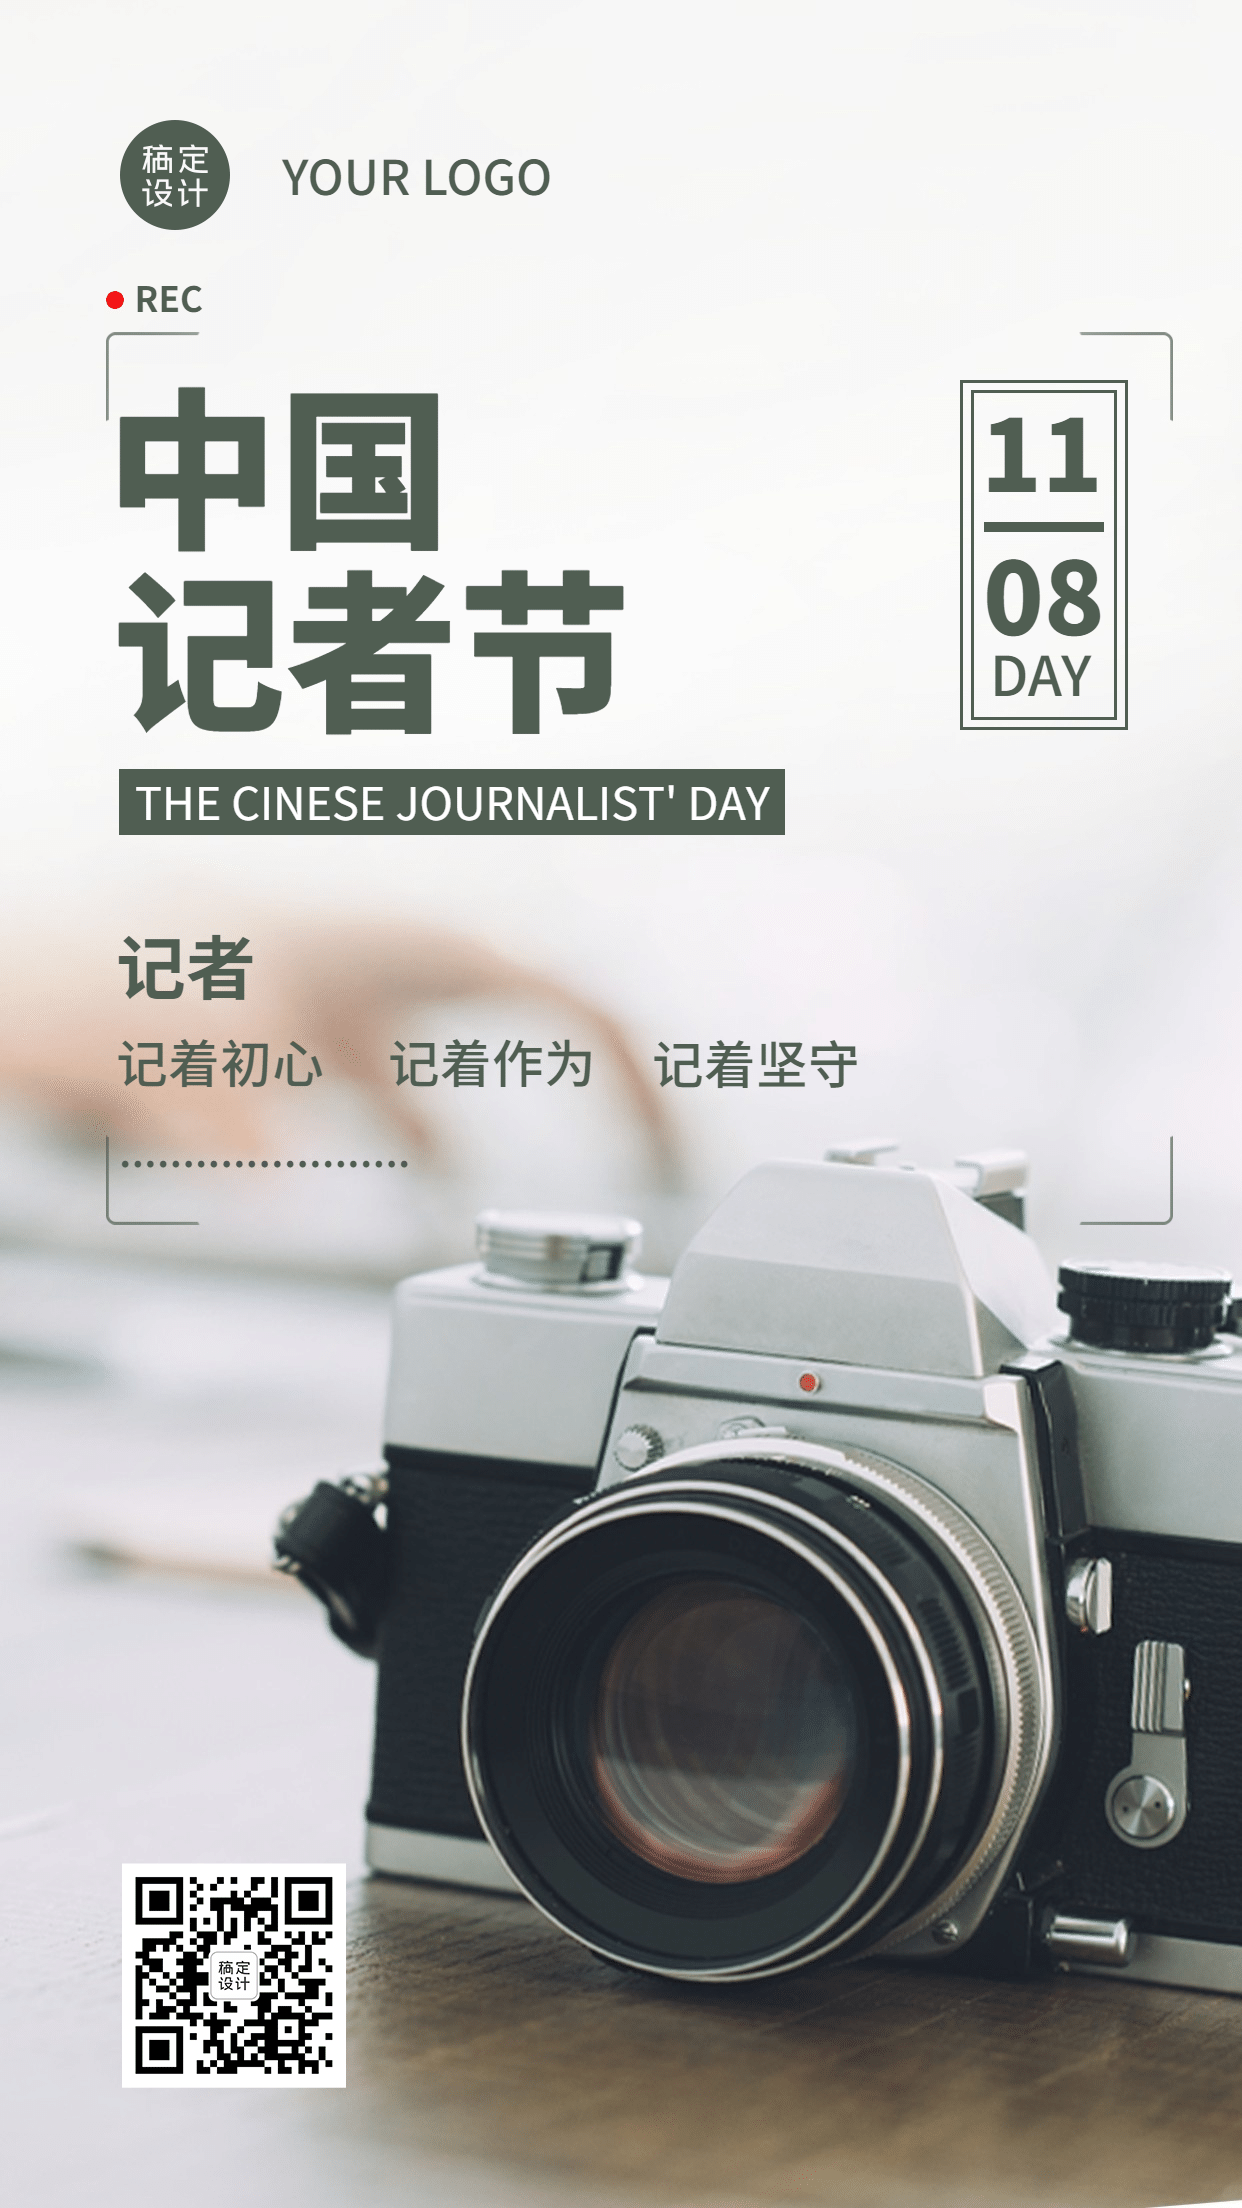 中国记者节节日祝福实景手机海报预览效果